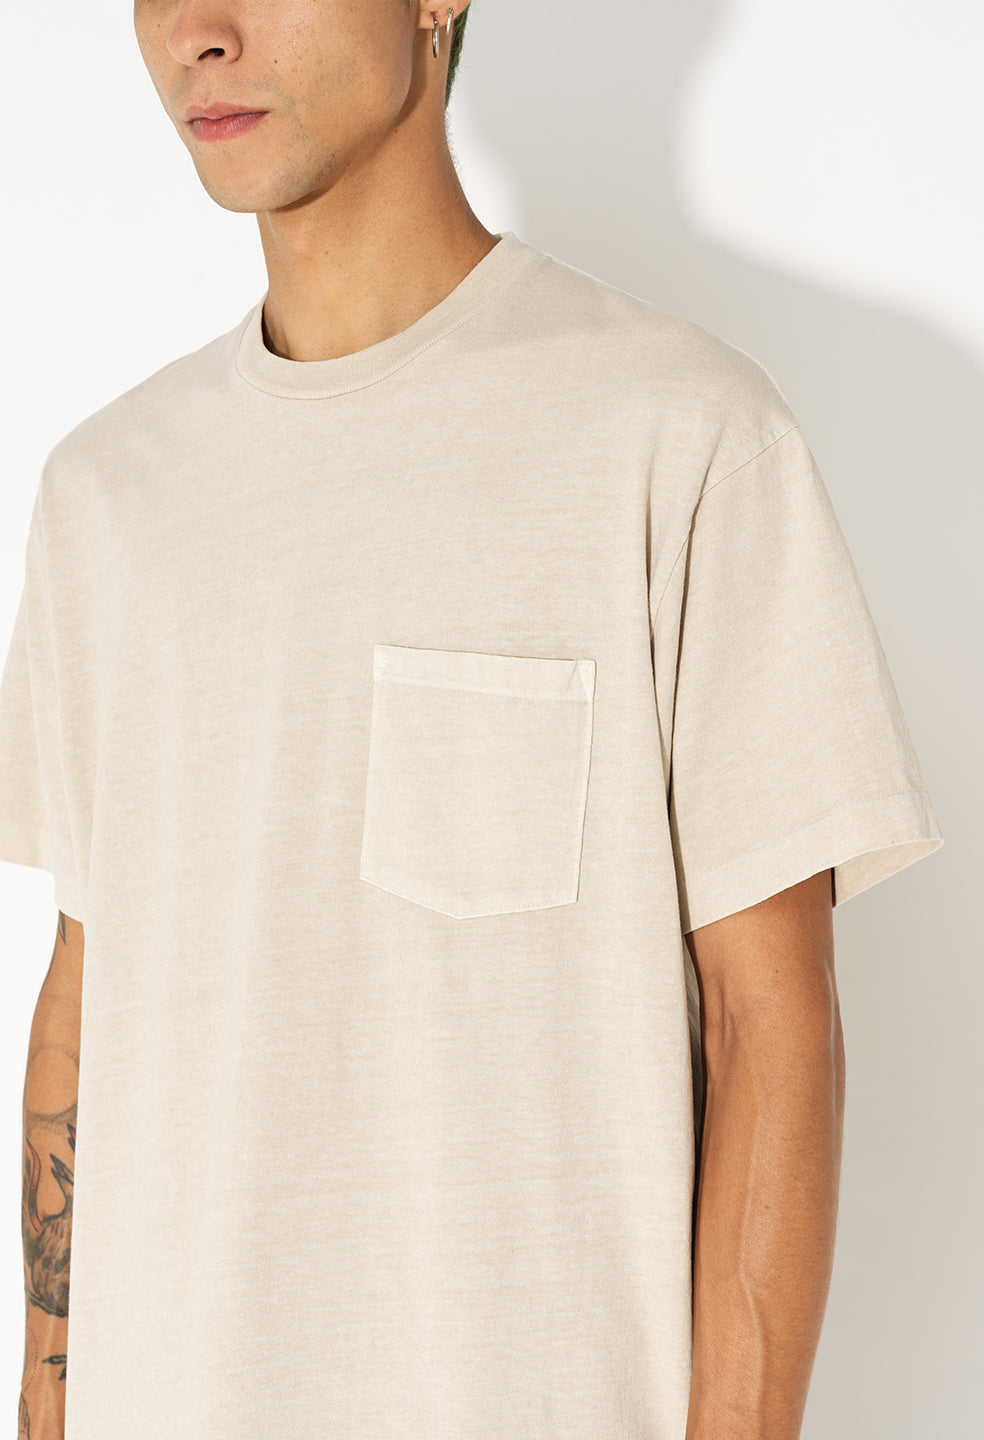 安い低価】 ジョンエリオット メンズ Tシャツ トップス T-shirt Light grey：ReVida 店